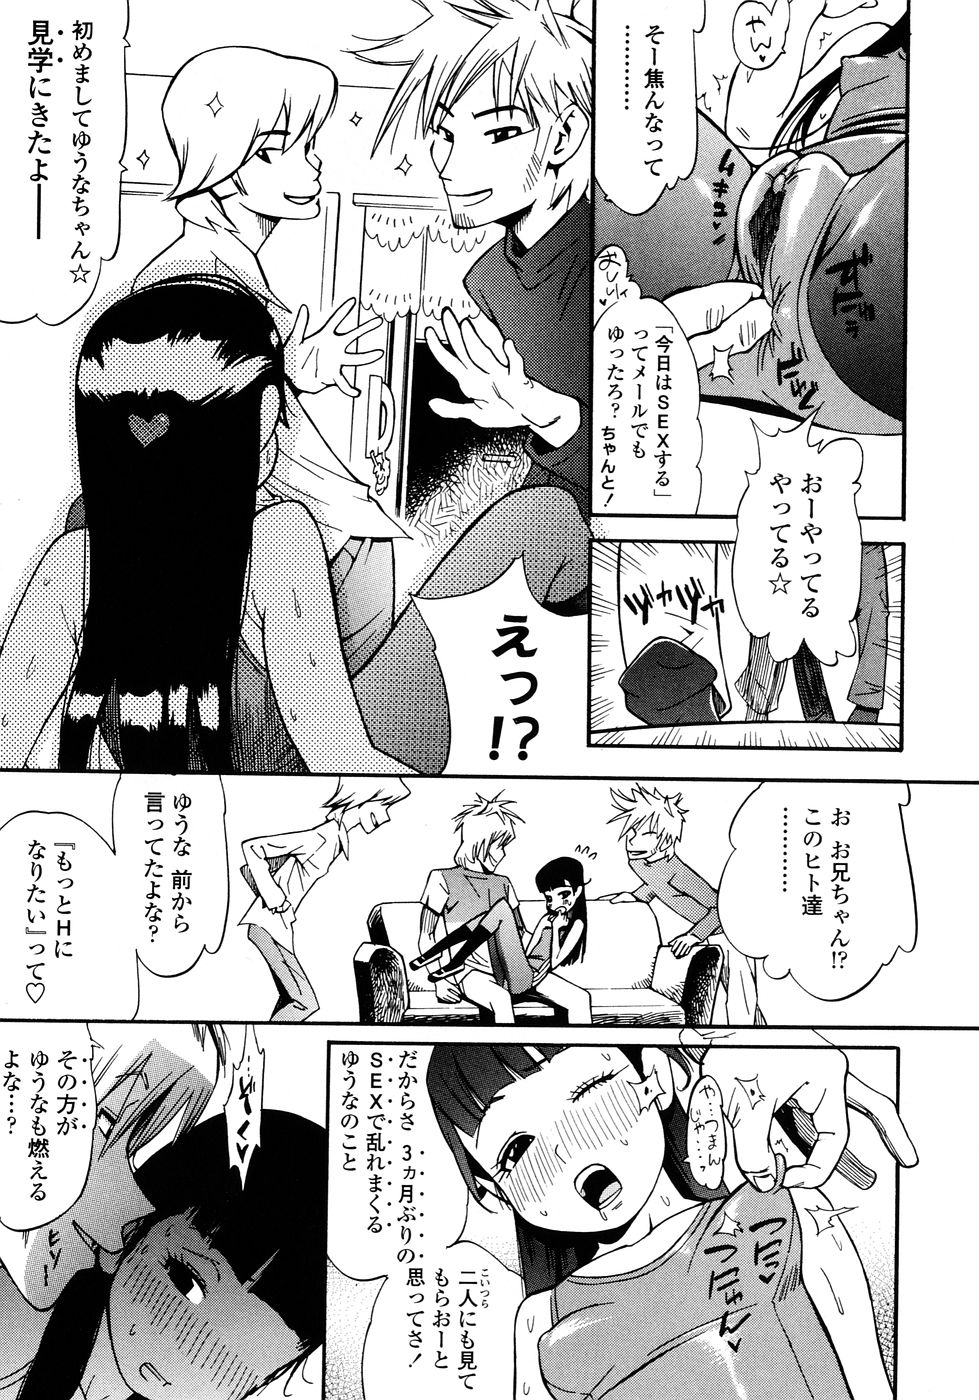 [Kishinosato Satoshi] Fetish! (><) page 7 full